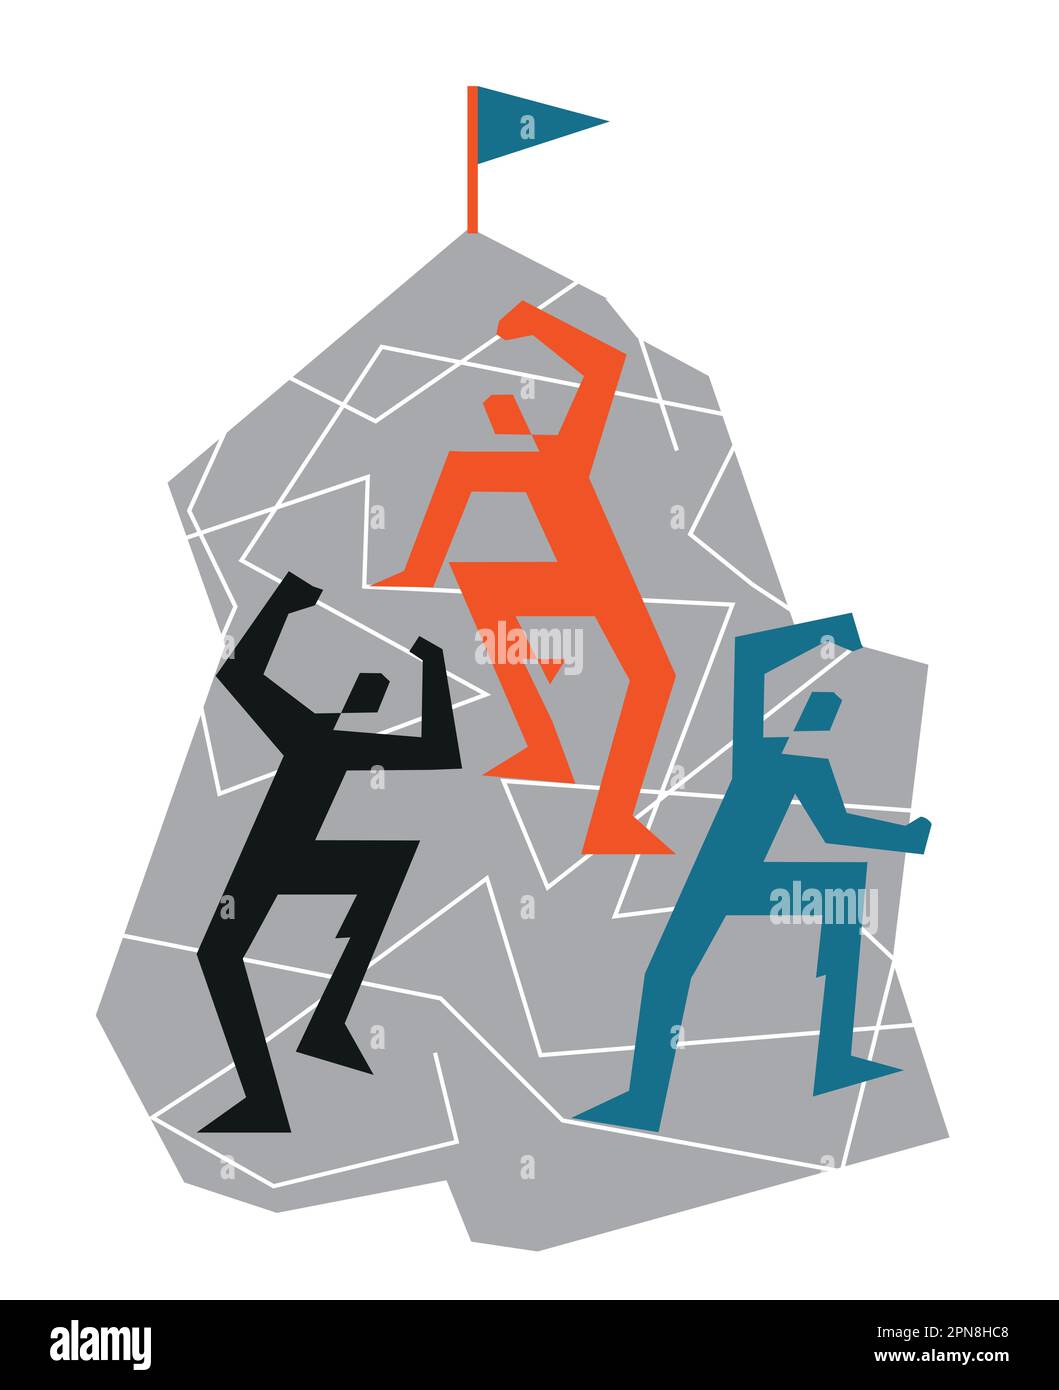 Tre arrampicatori su una parete di roccia. Illustrazione geometrica stilizzata dell'attività di alpinismo. Isolato su sfondo bianco. Vettore disponibile. Illustrazione Vettoriale